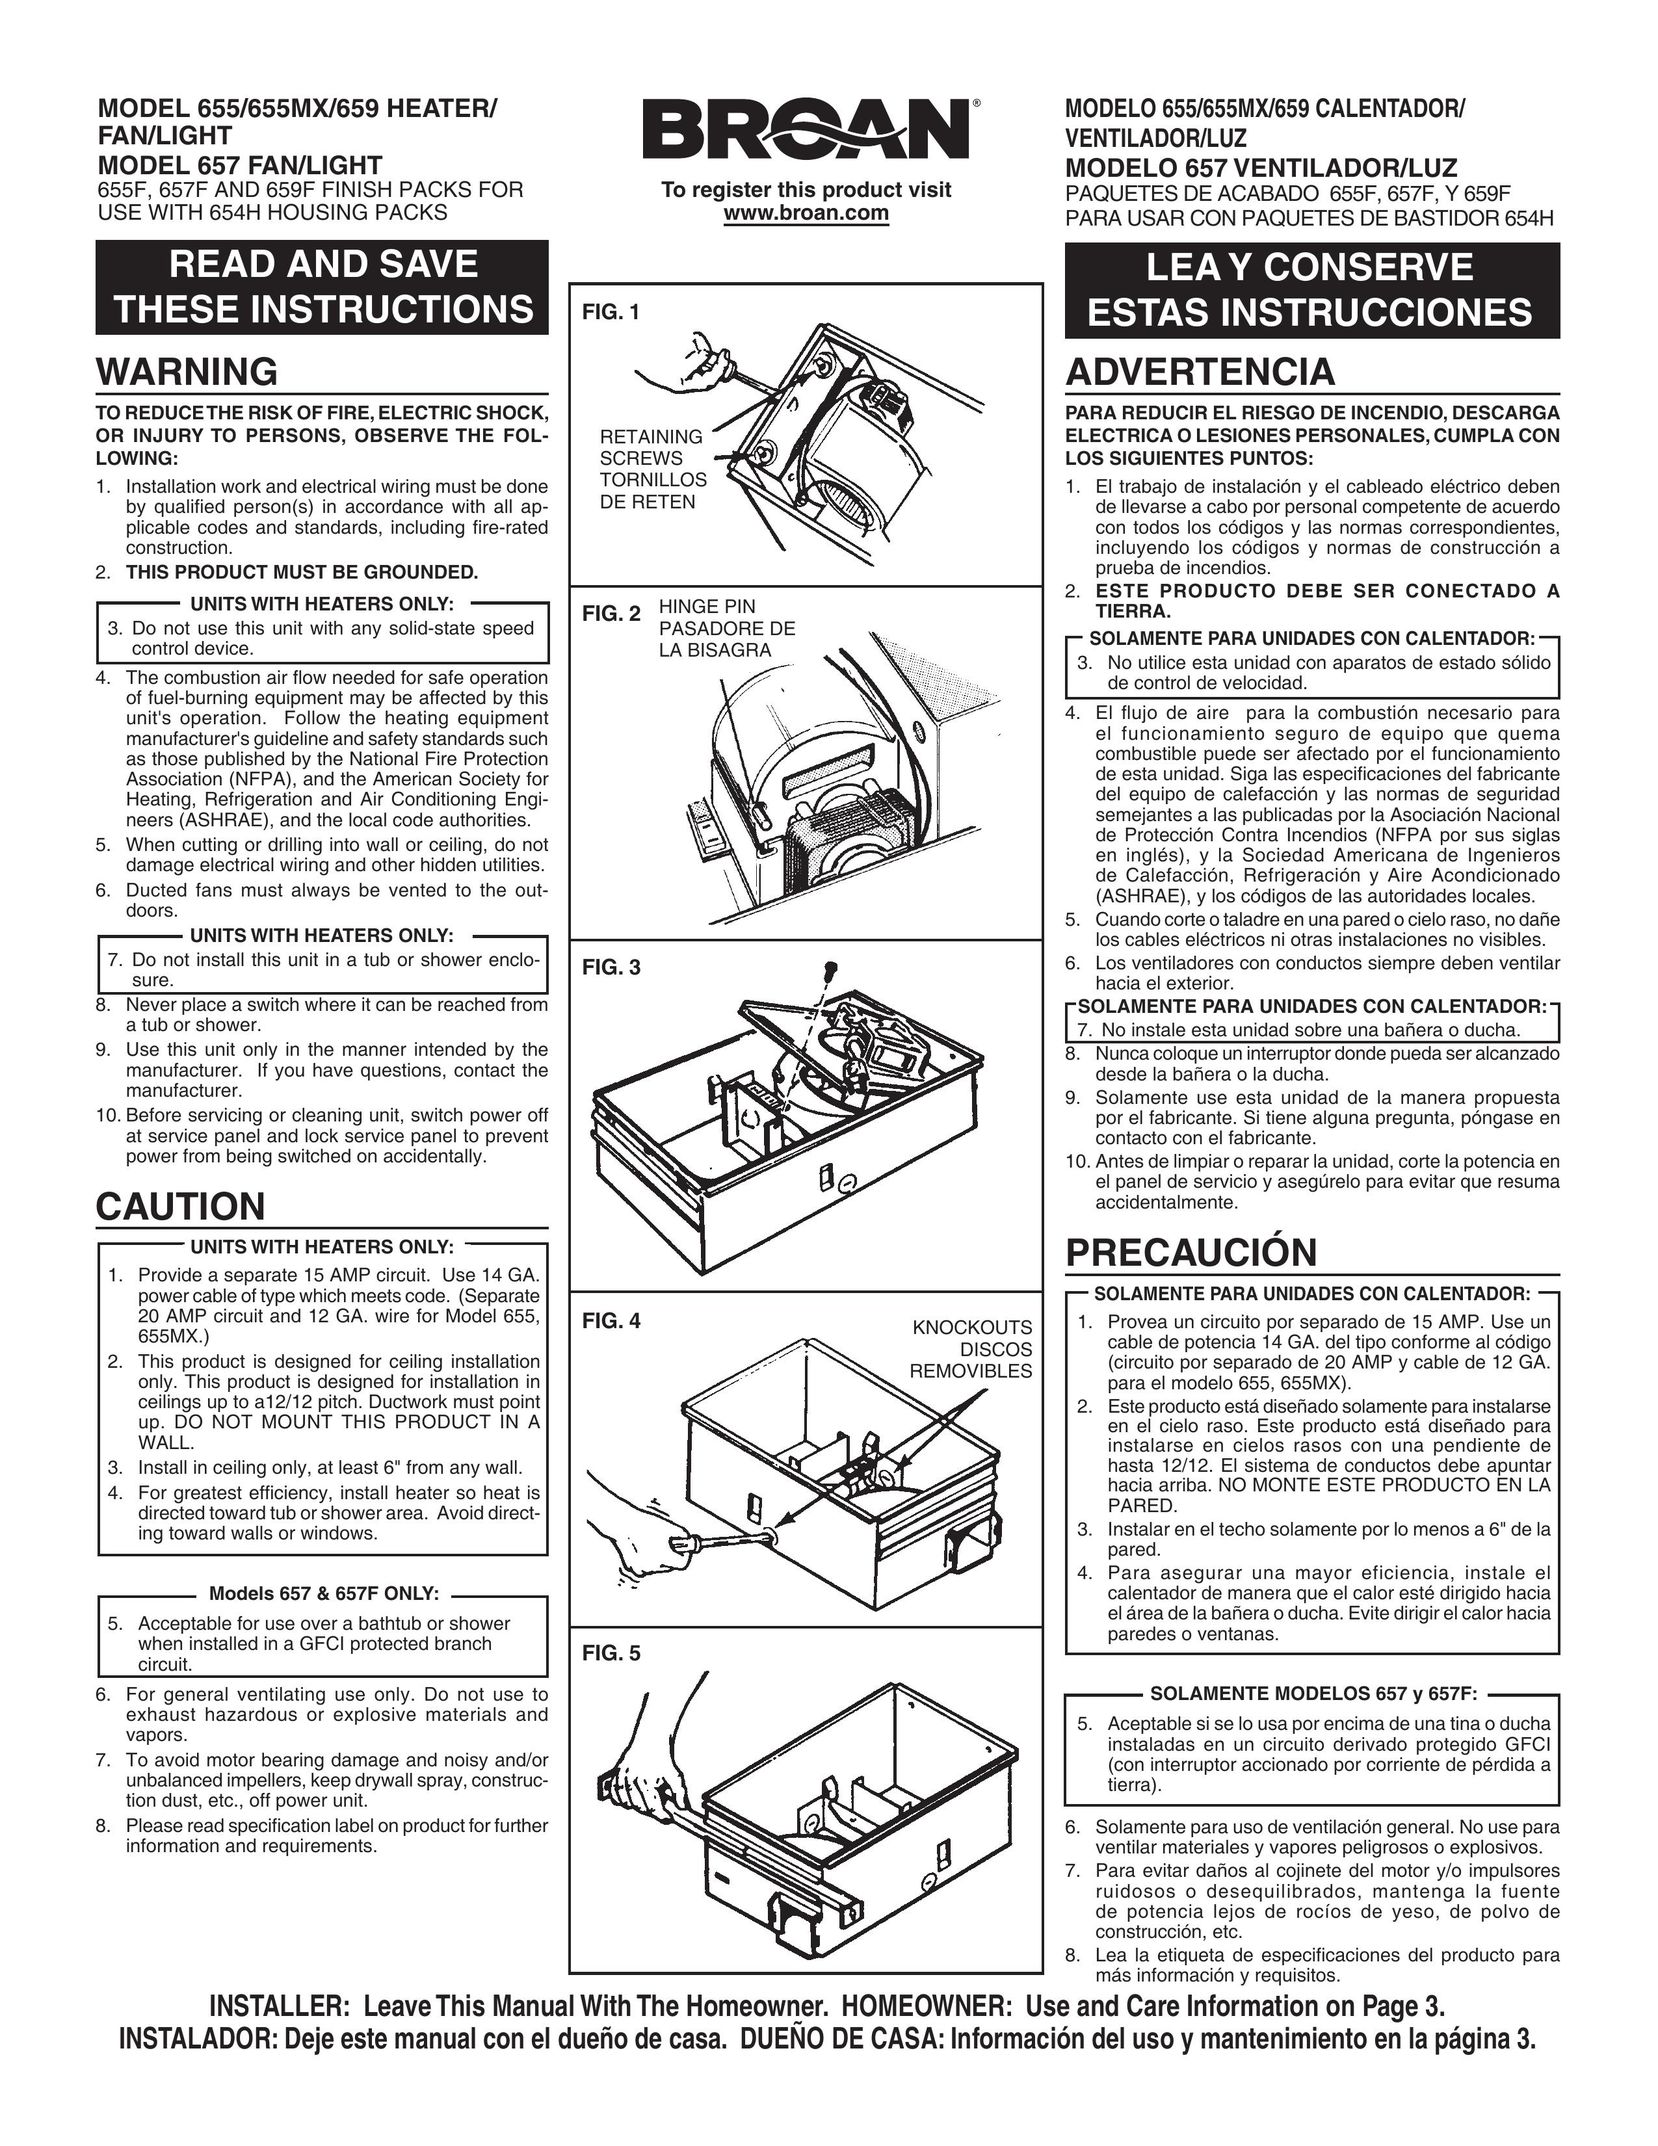 Broan 657 Fan User Manual